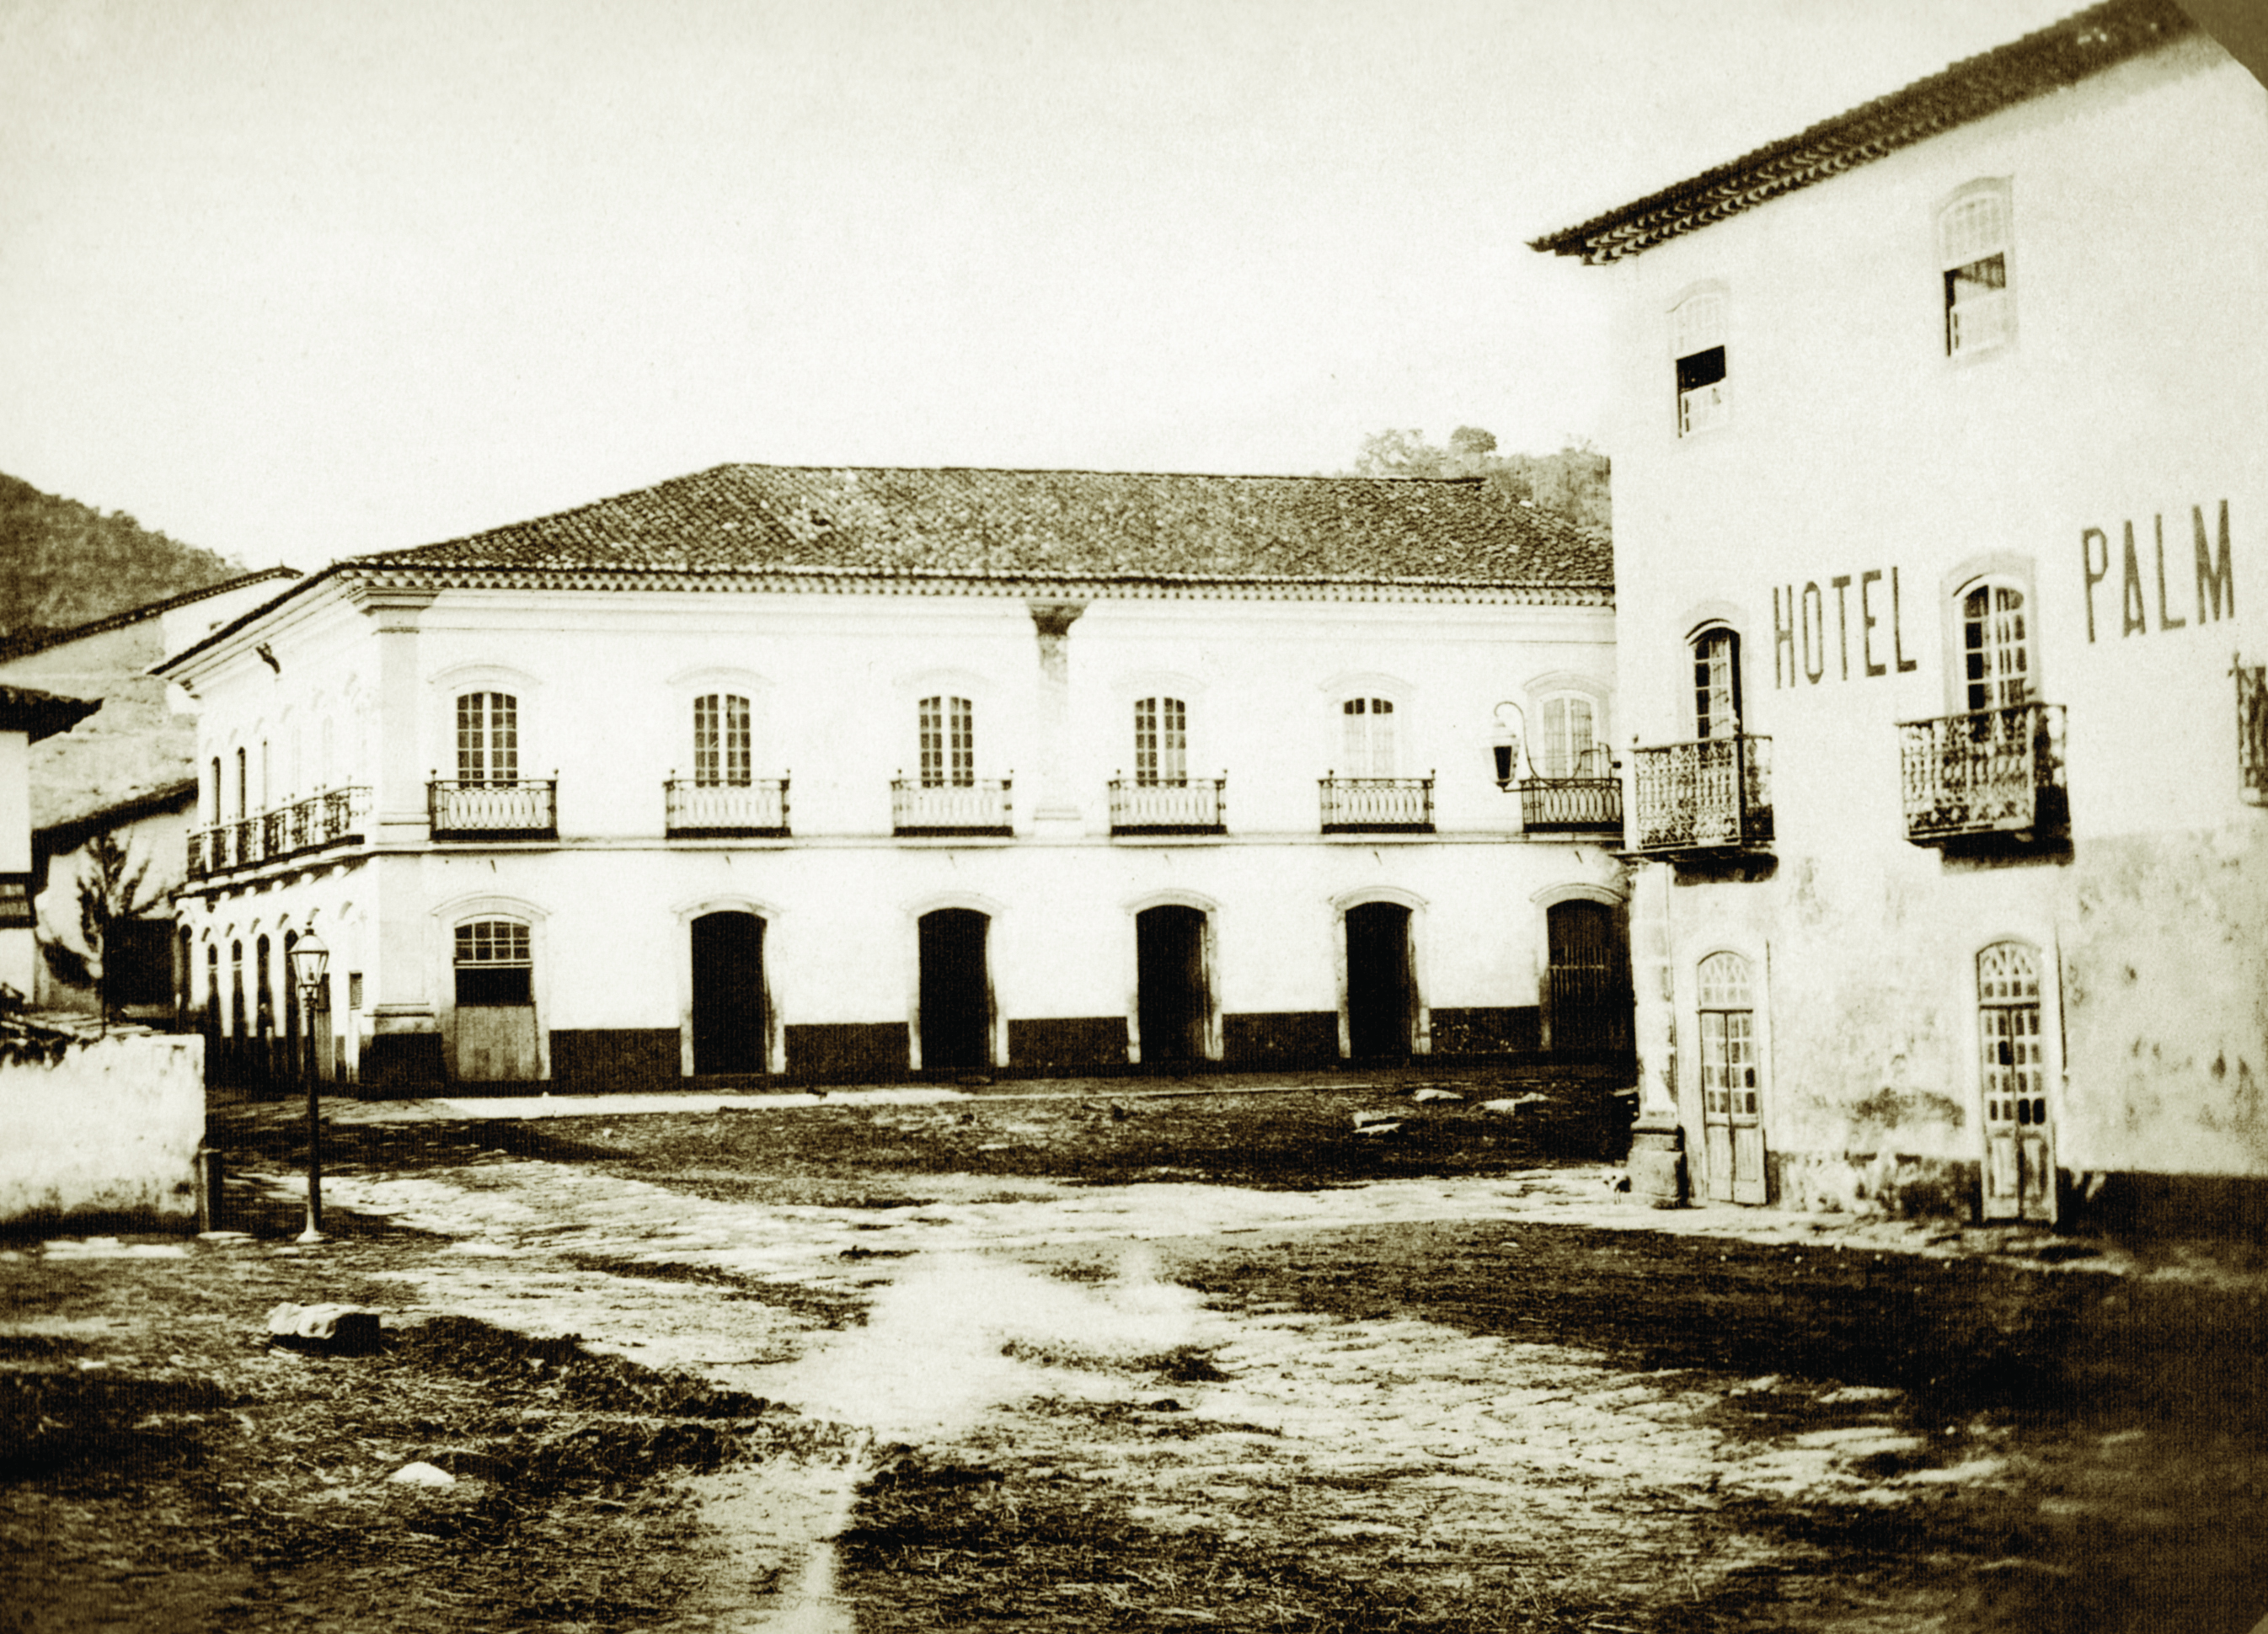 Hotel Palm, que hospedou o fotógrafo Militão, ficava na rua da Praia. Vê-se na imagem, ao fundo, a Casa Hard Hand, ainda existente em Santos nos dias atuais.